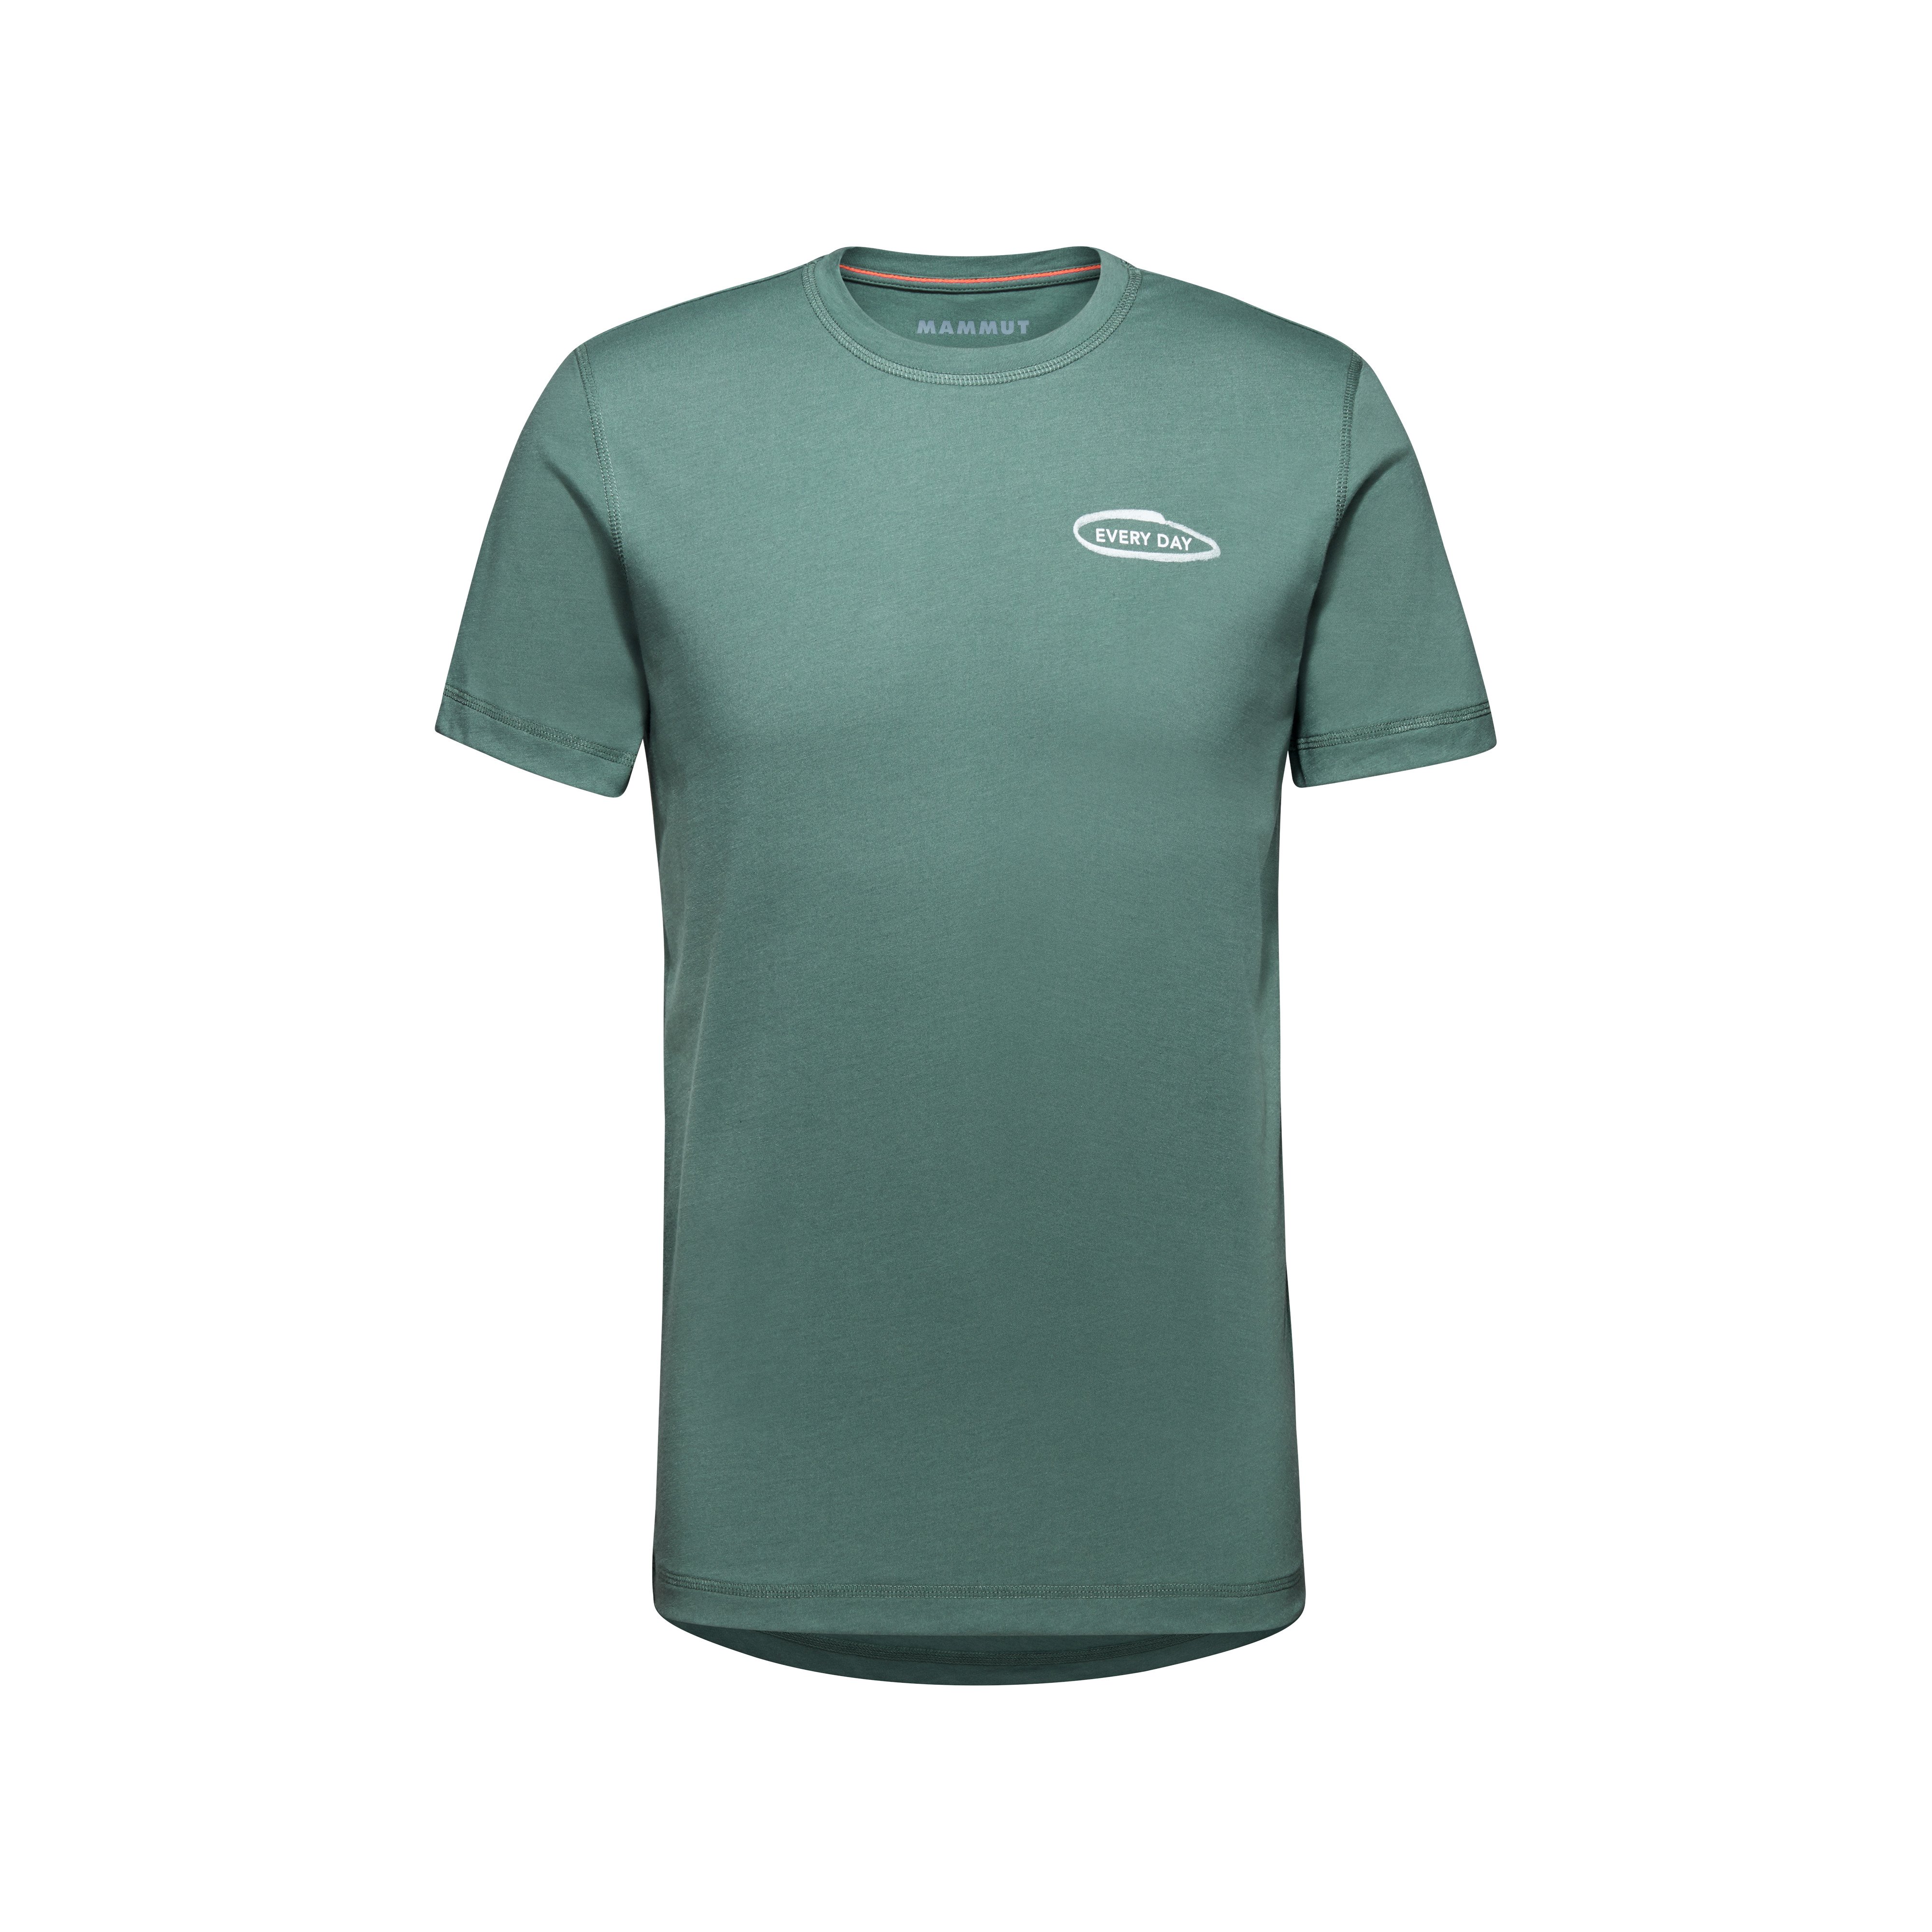 Mammut Core T-Shirt Men Every Day - dark jade, S product image